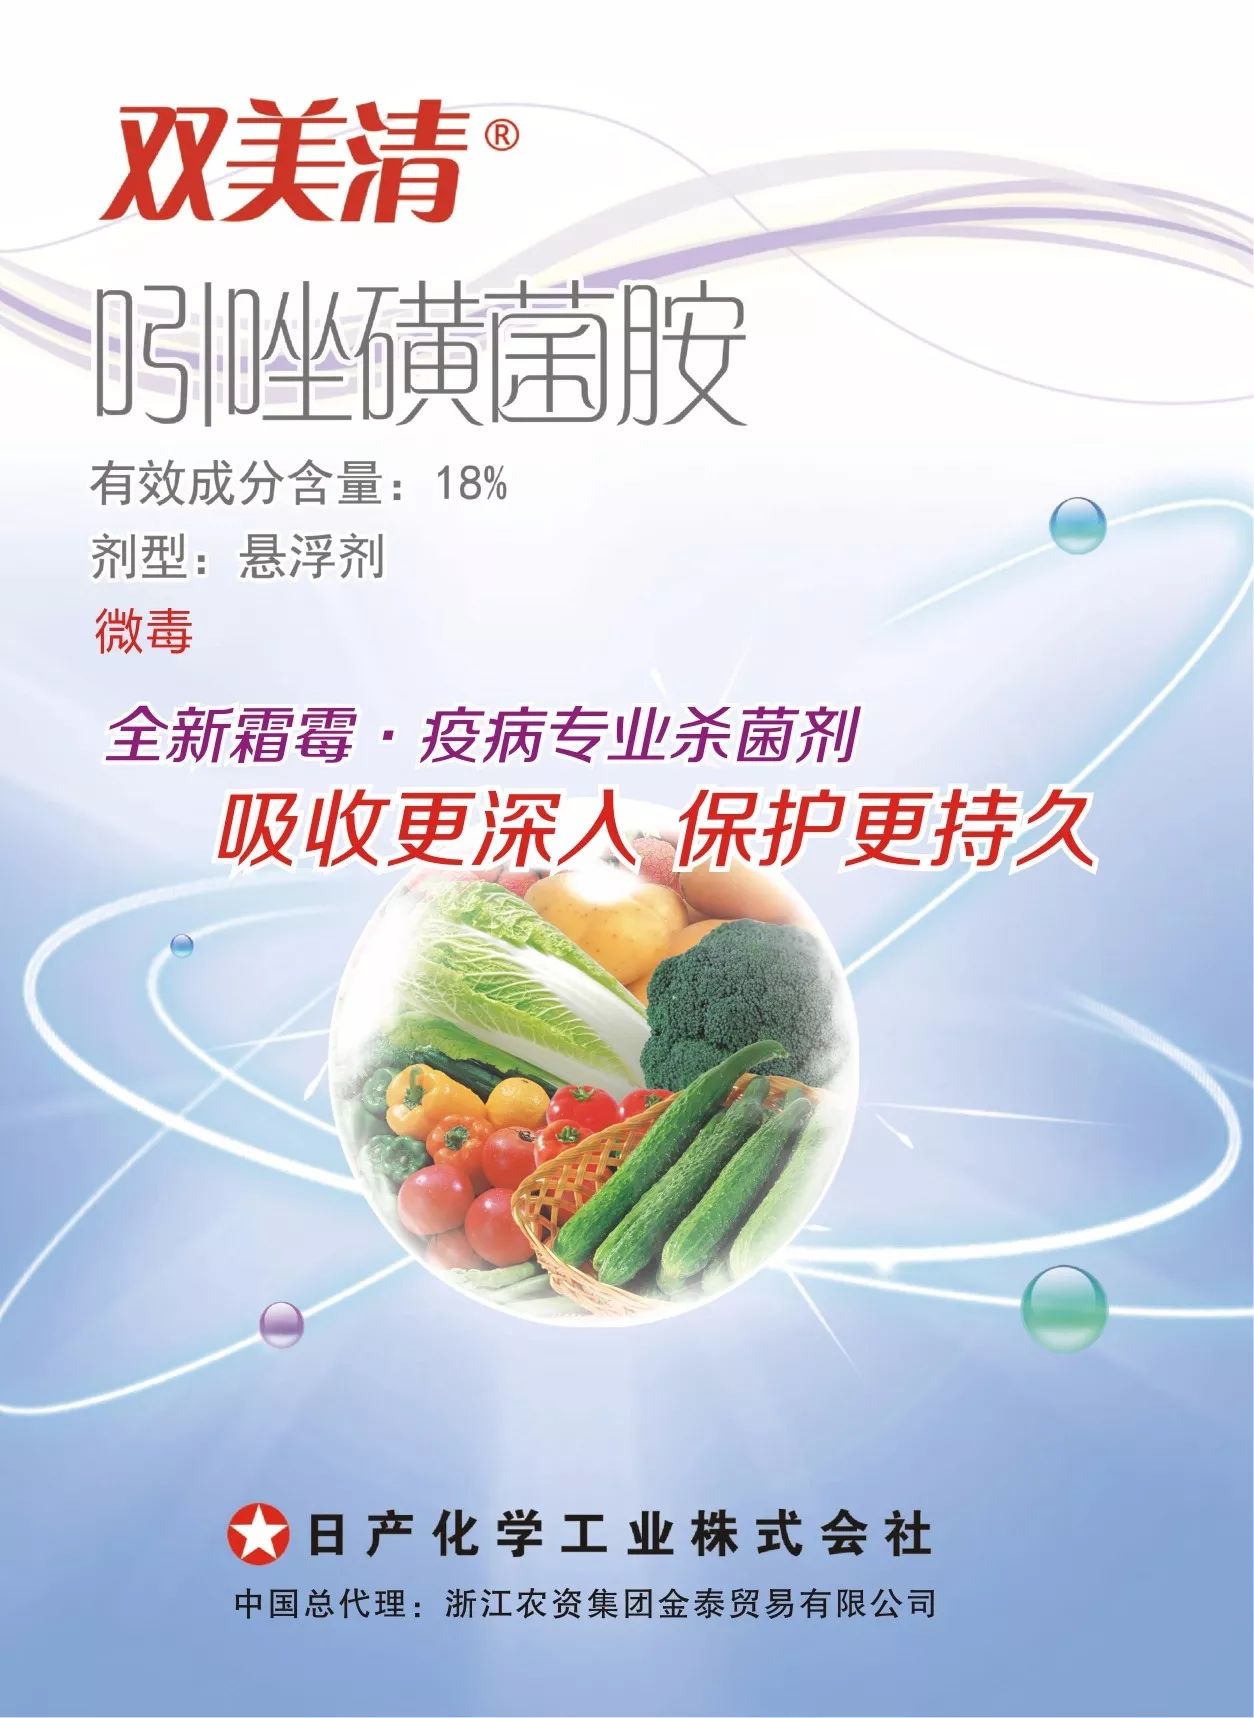 推广丨浙农金泰在辽宁省启动推广双美清产品